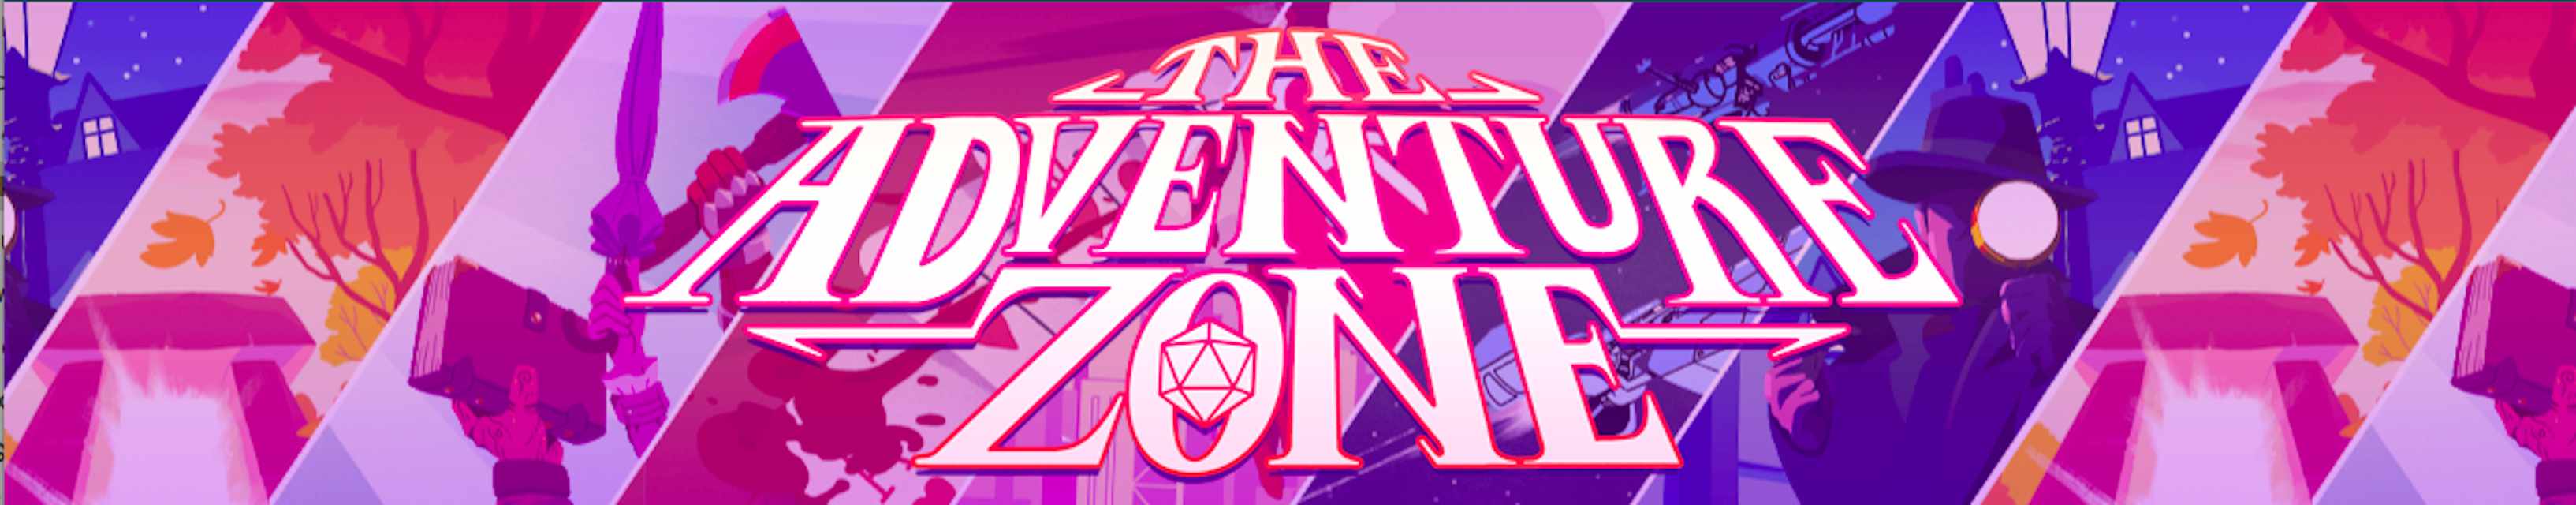 Arte do cabeçalho de The Adventure Zone com cenas ilustradas de jogos que eles jogaram.